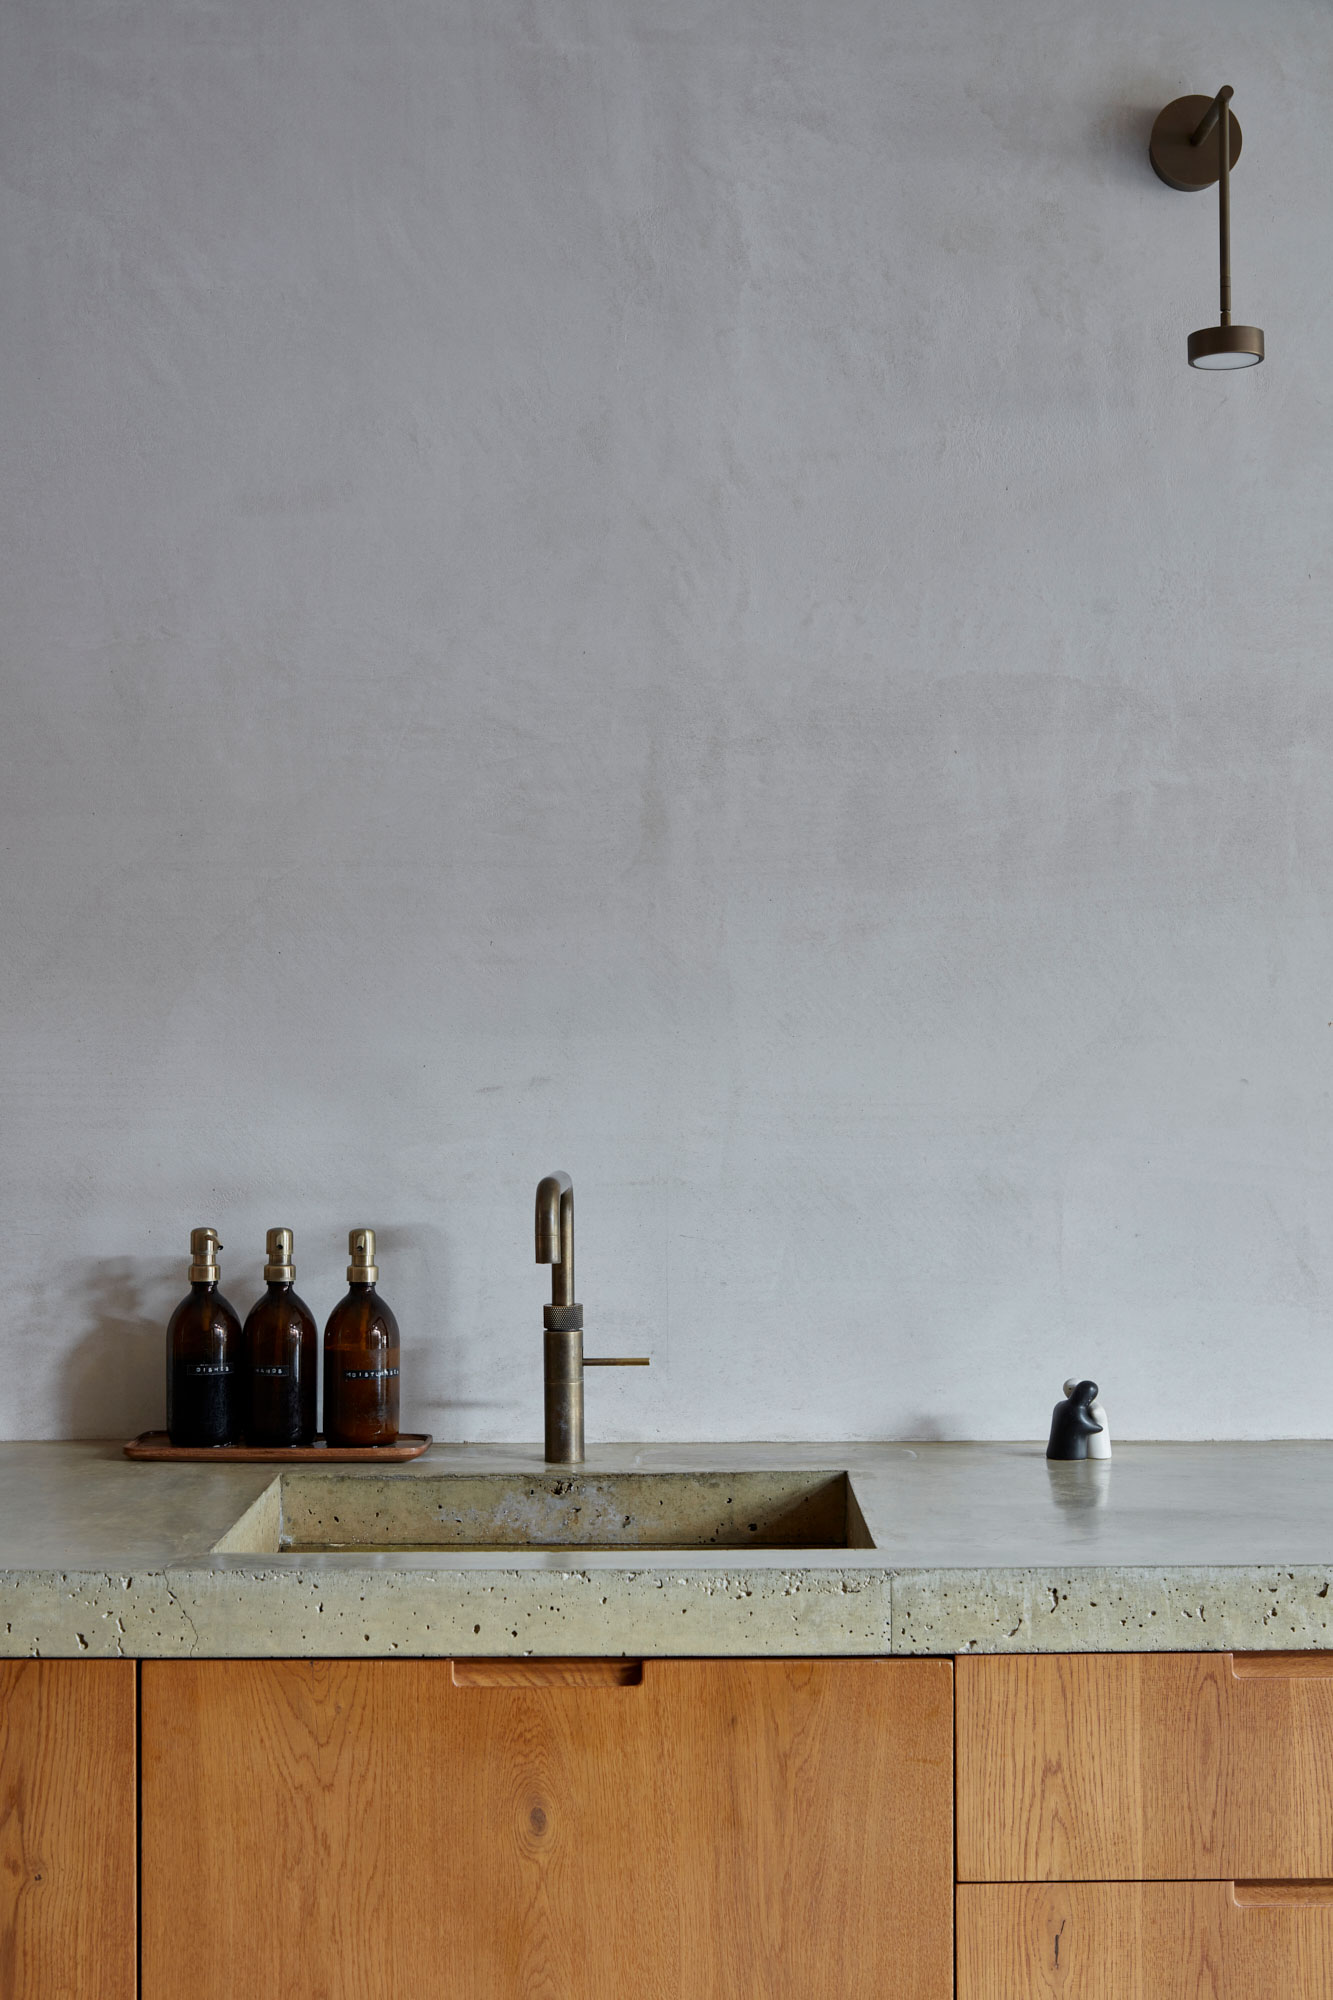 Aged brass kitchen sink tap